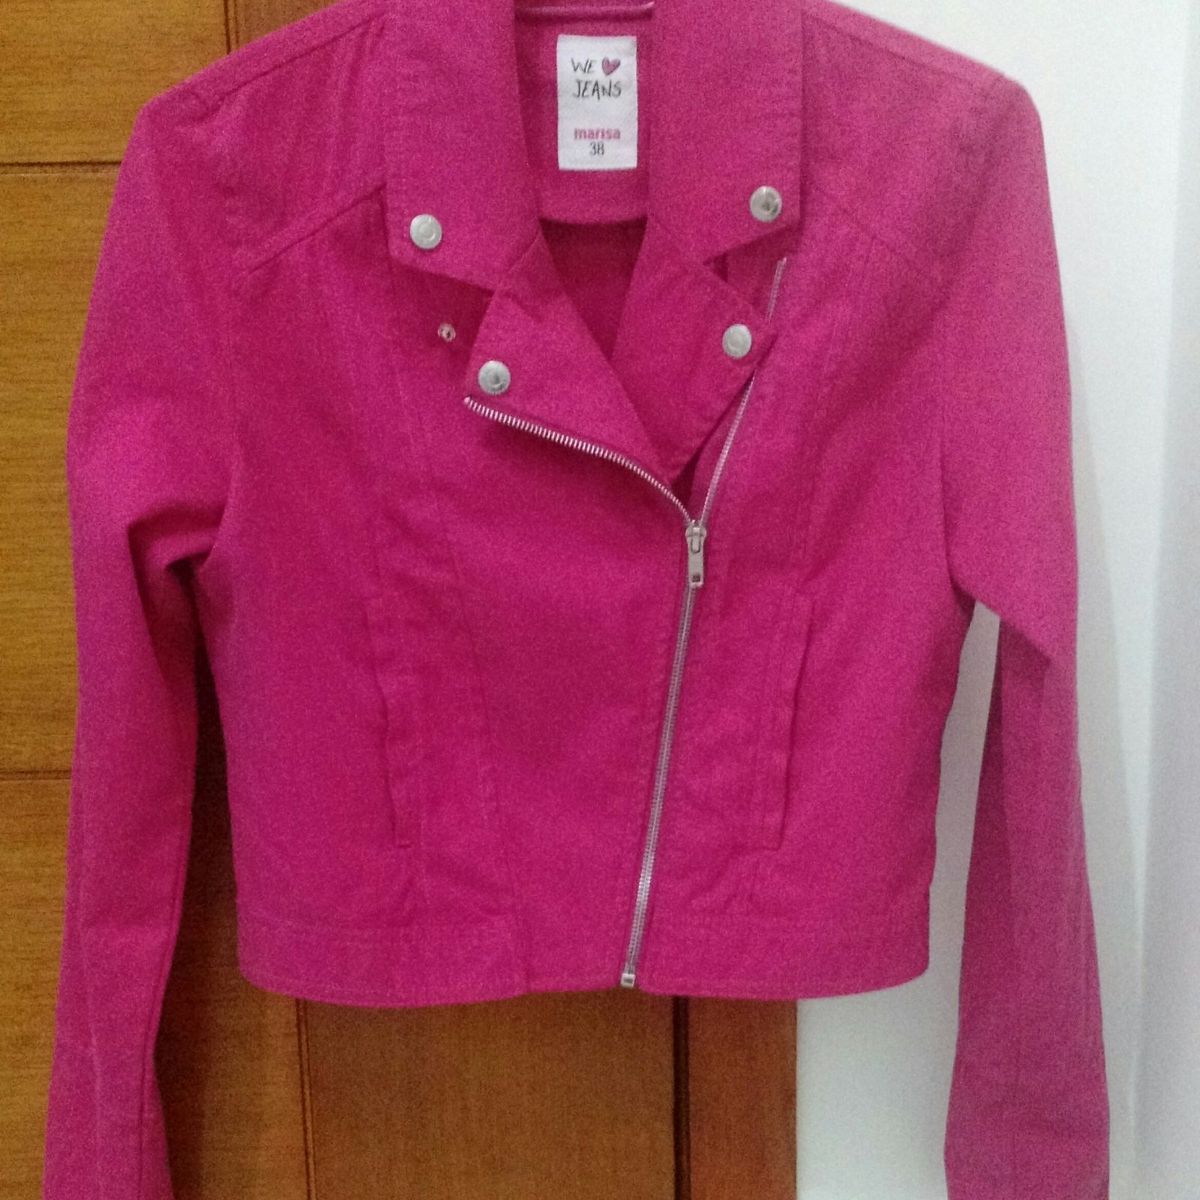 jaqueta rosa marisa